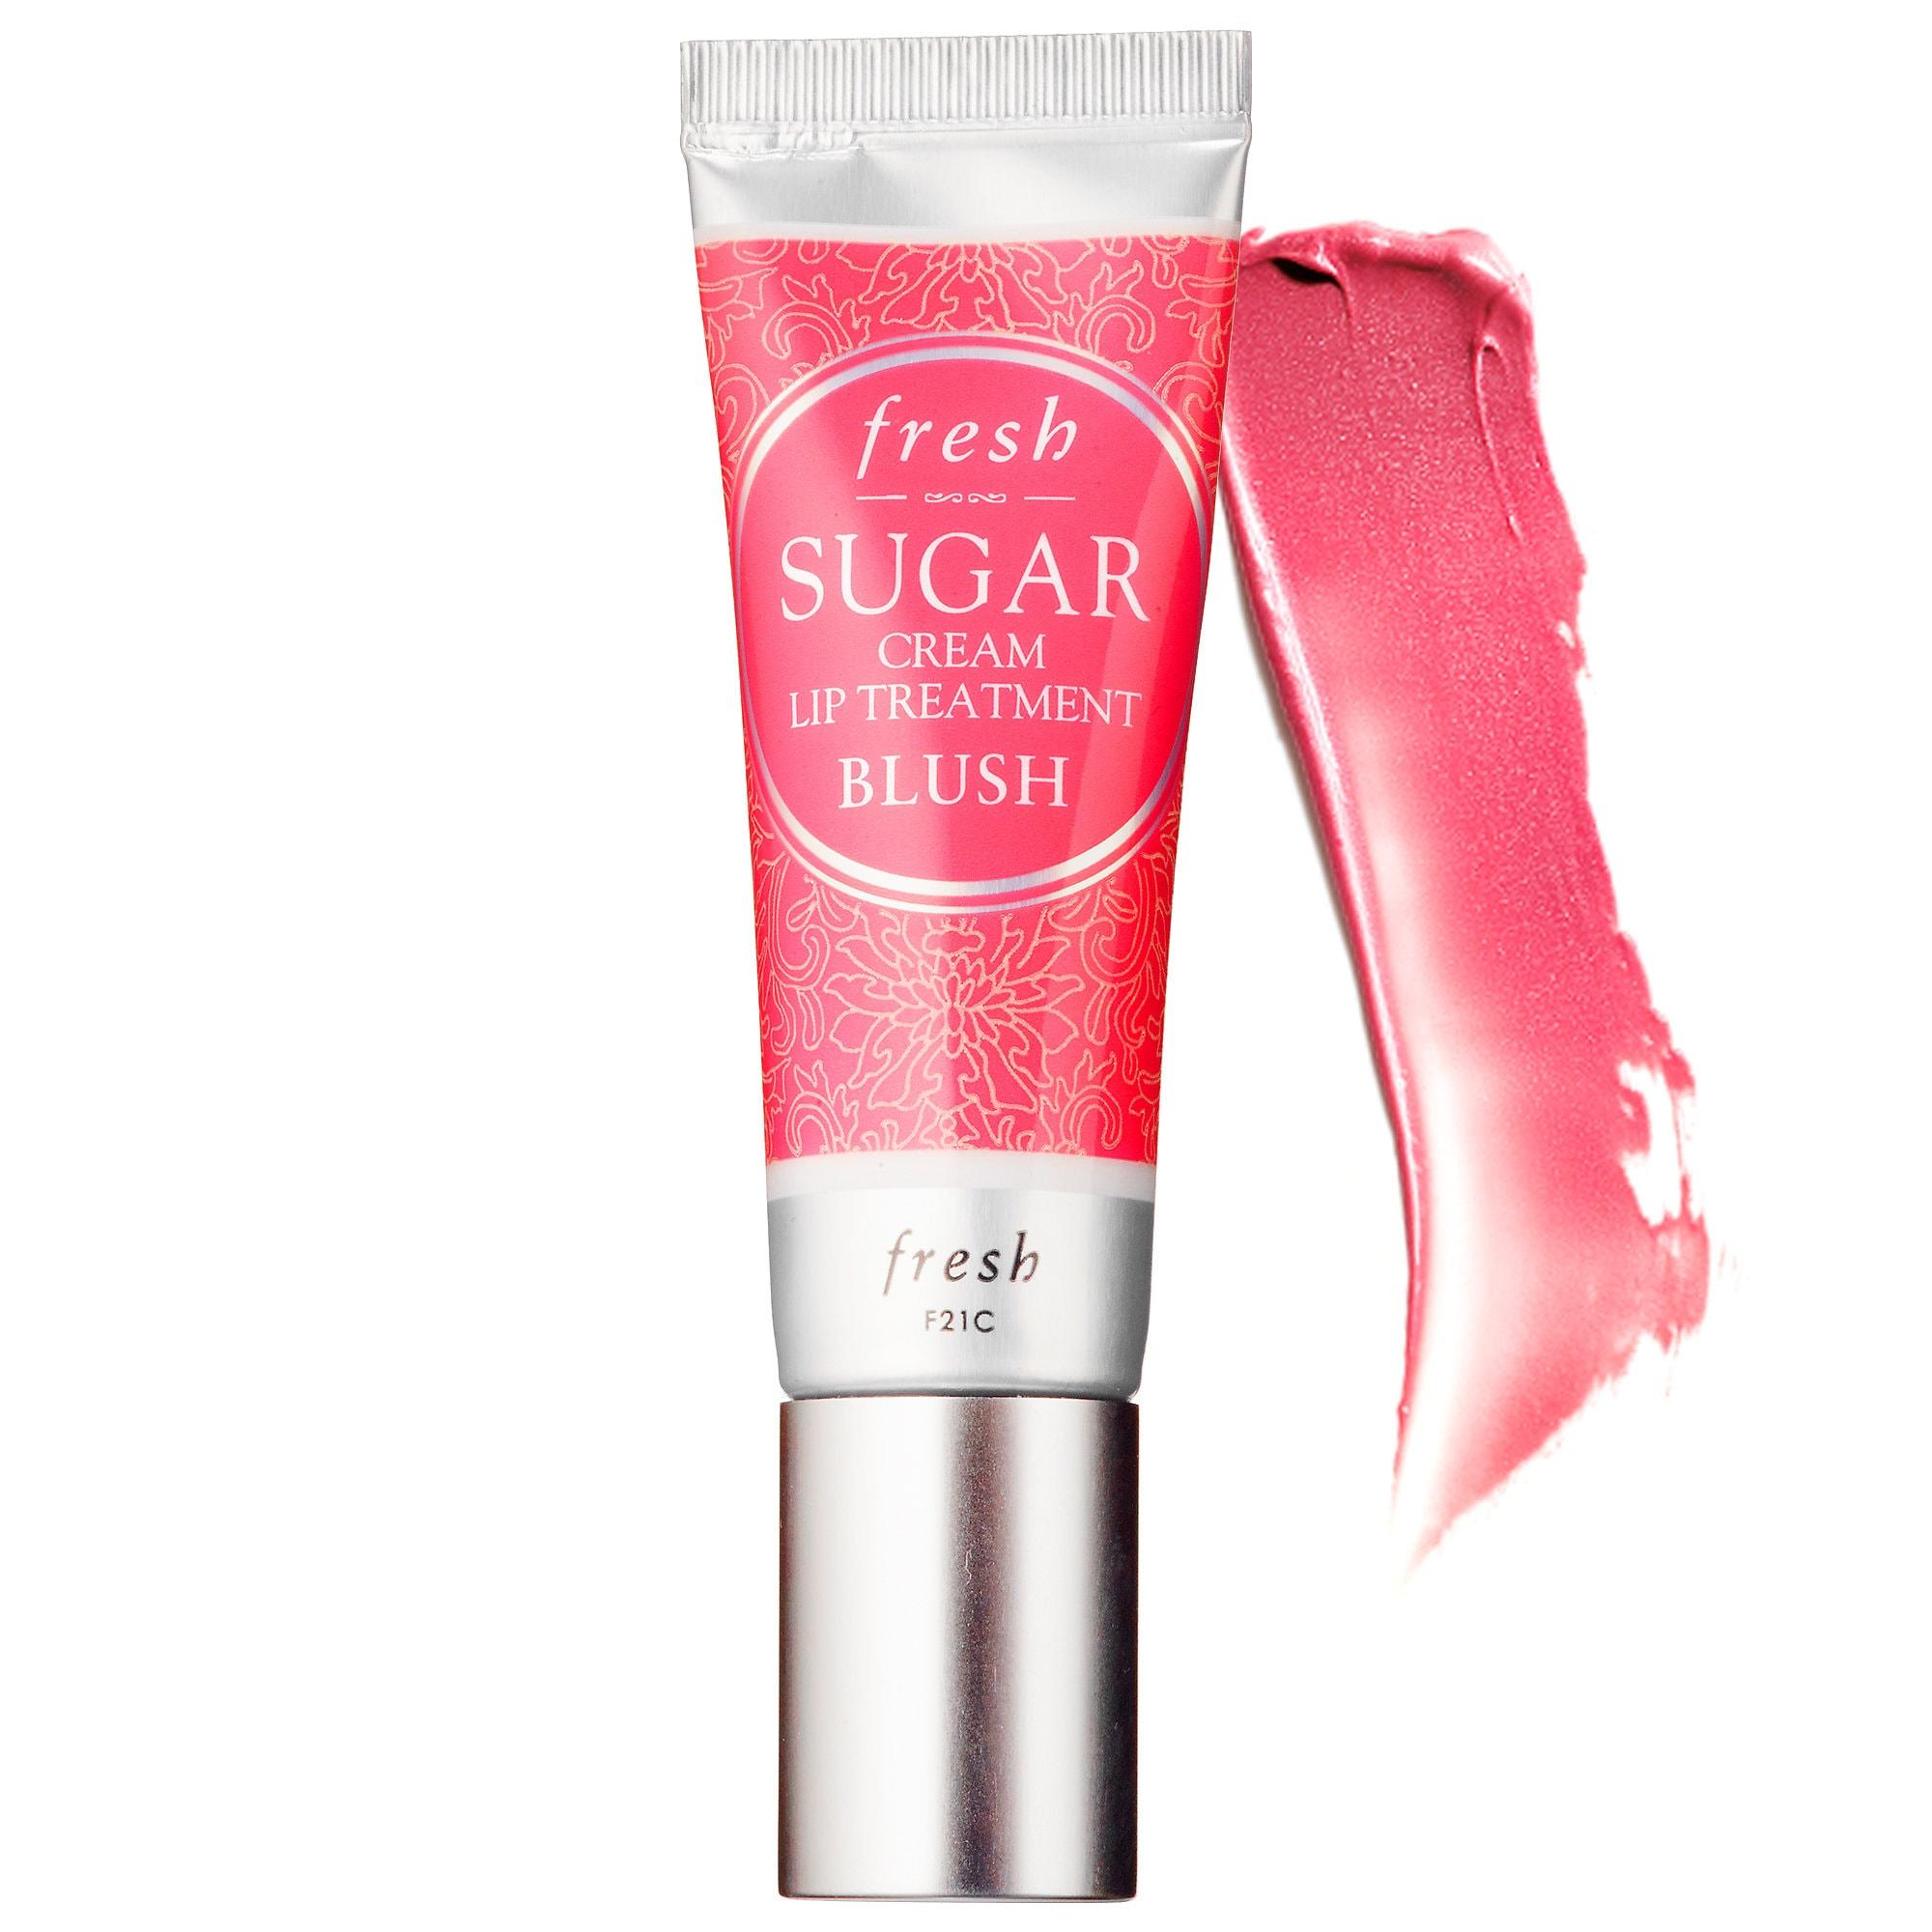 Fresh Sugar Cream Lip Treatment Blush